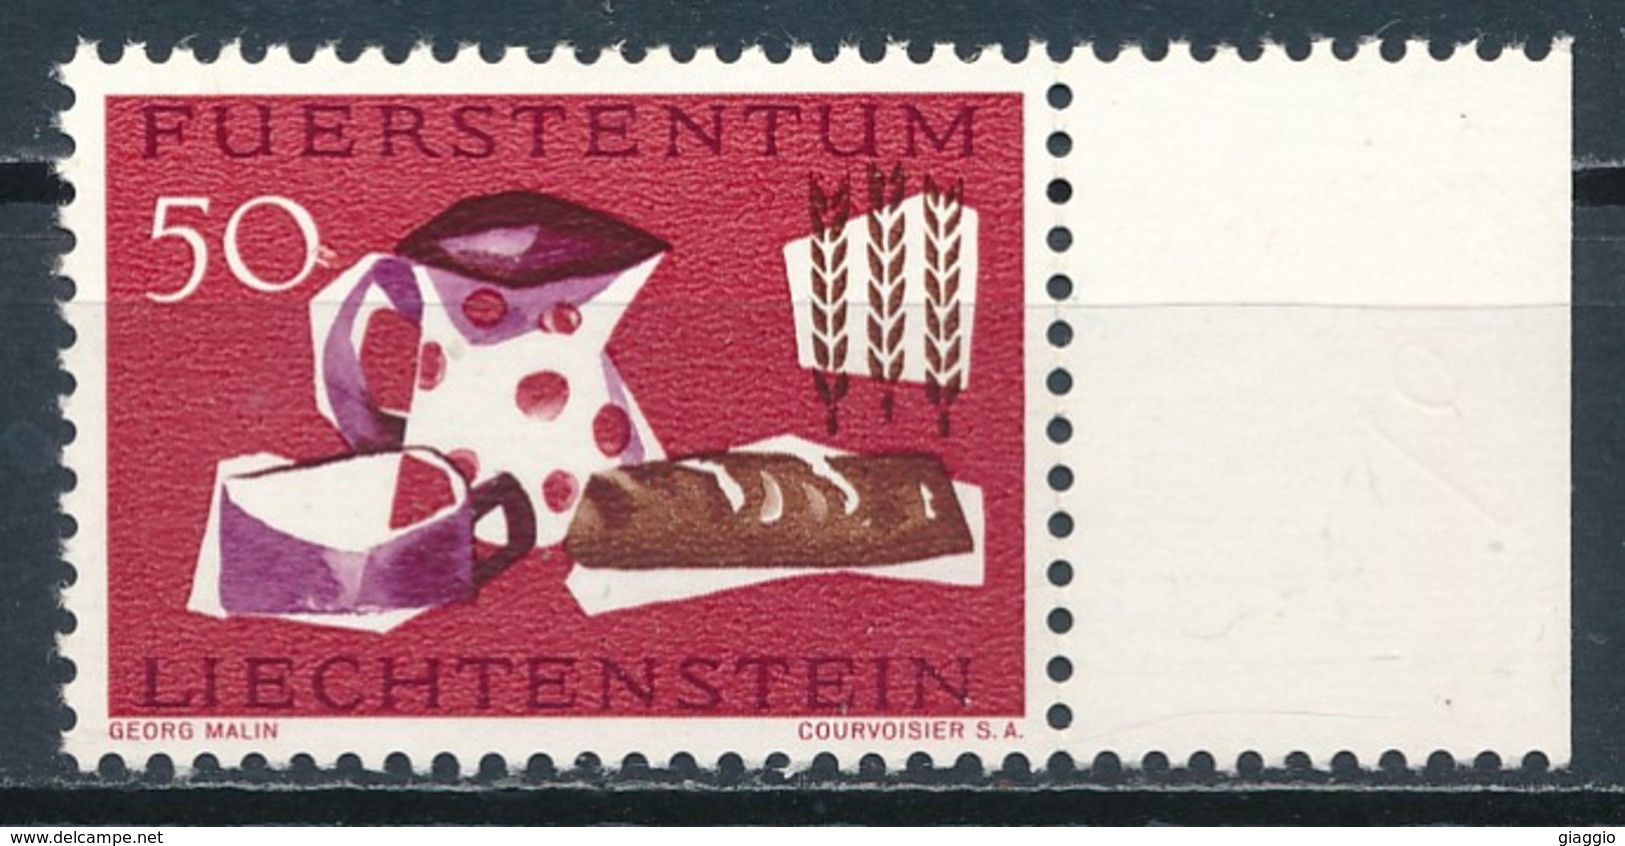 °°° LIECHTENSTEIN - Y&T N°382 - 1963 MNH °°° - Unused Stamps